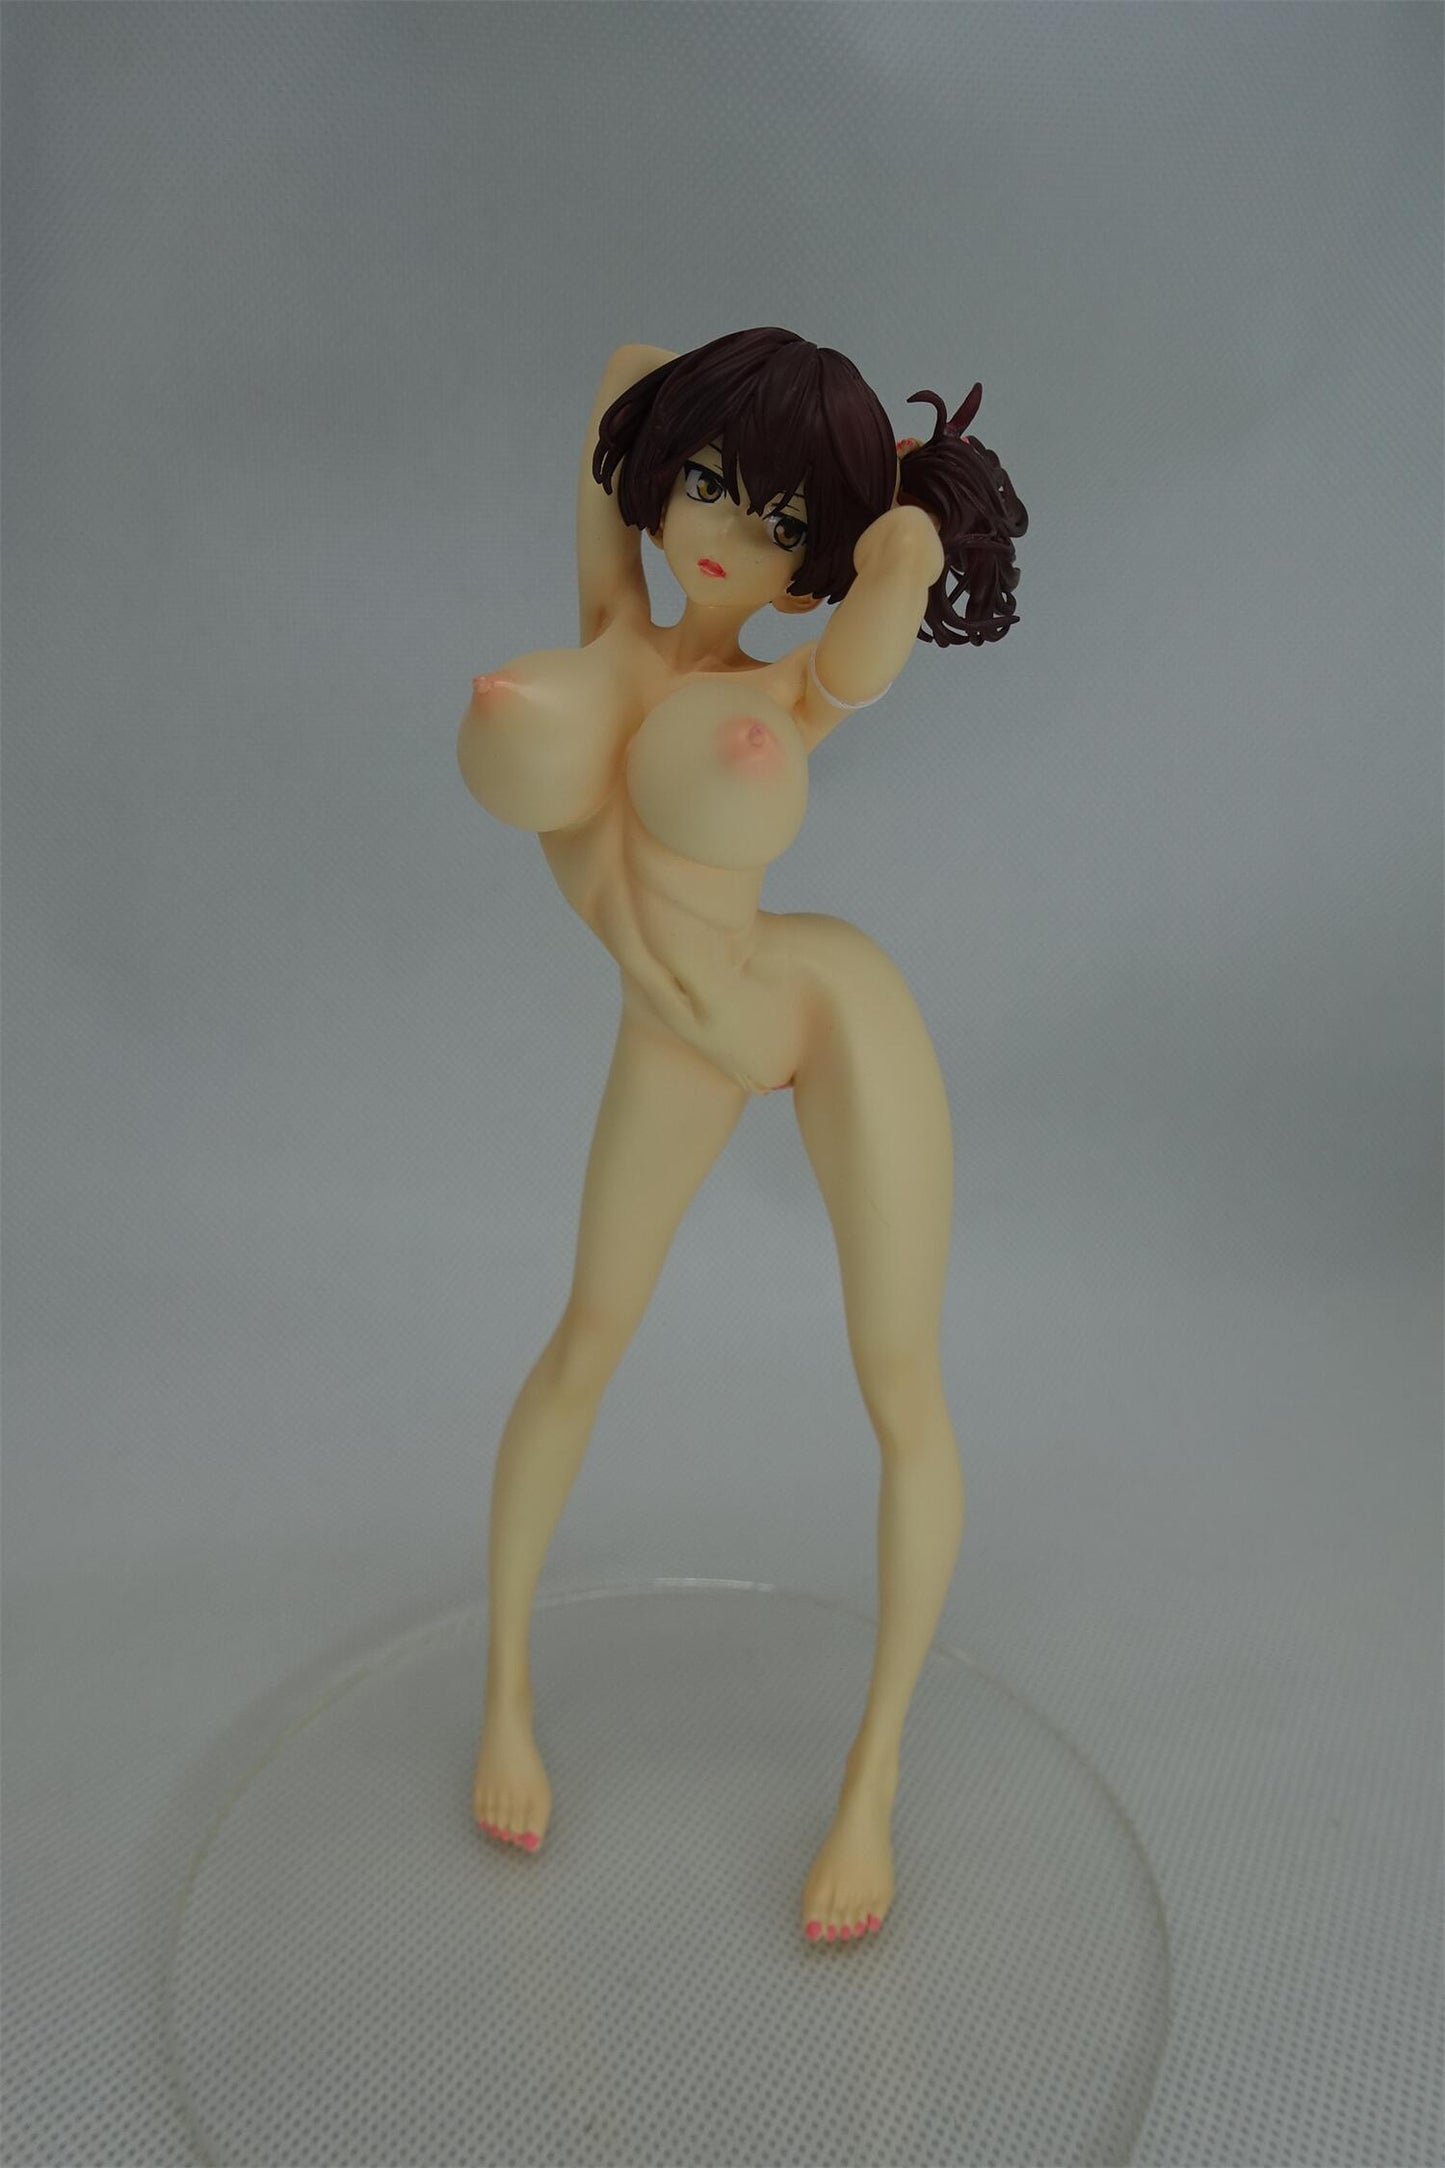 Kantai Collection Kaga huge breast Ver. 1/6 naked anime figure sexy